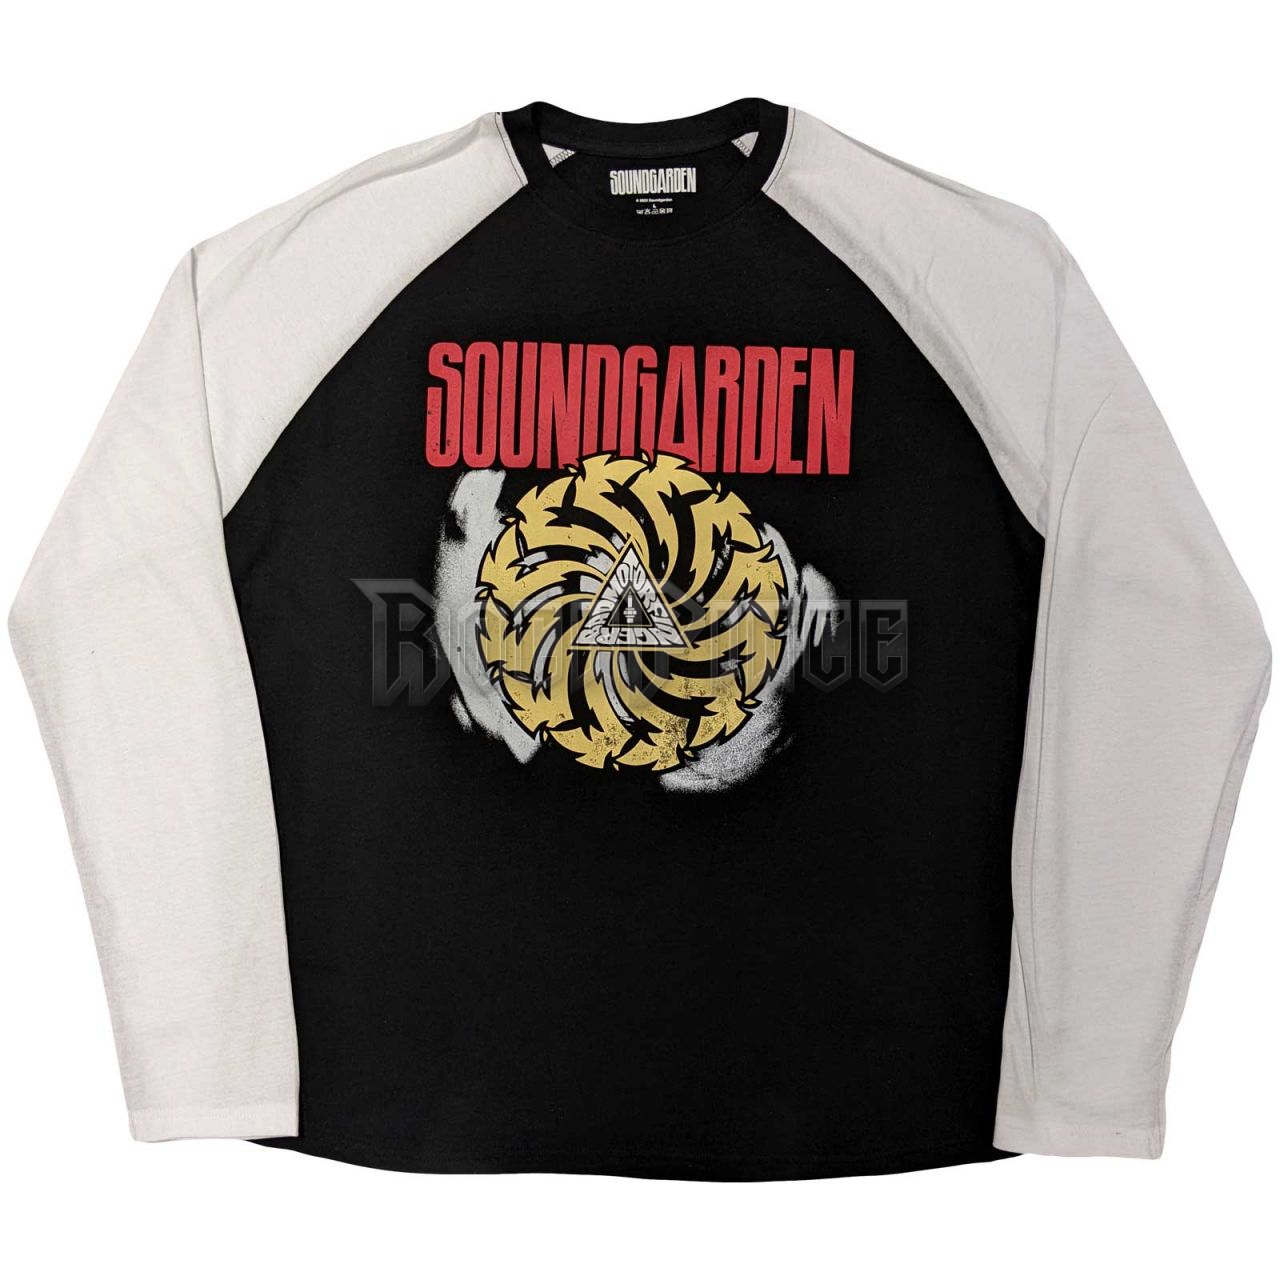 Soundgarden - Tour 2017 - unisex raglán ujjú póló - SGRL11MBW